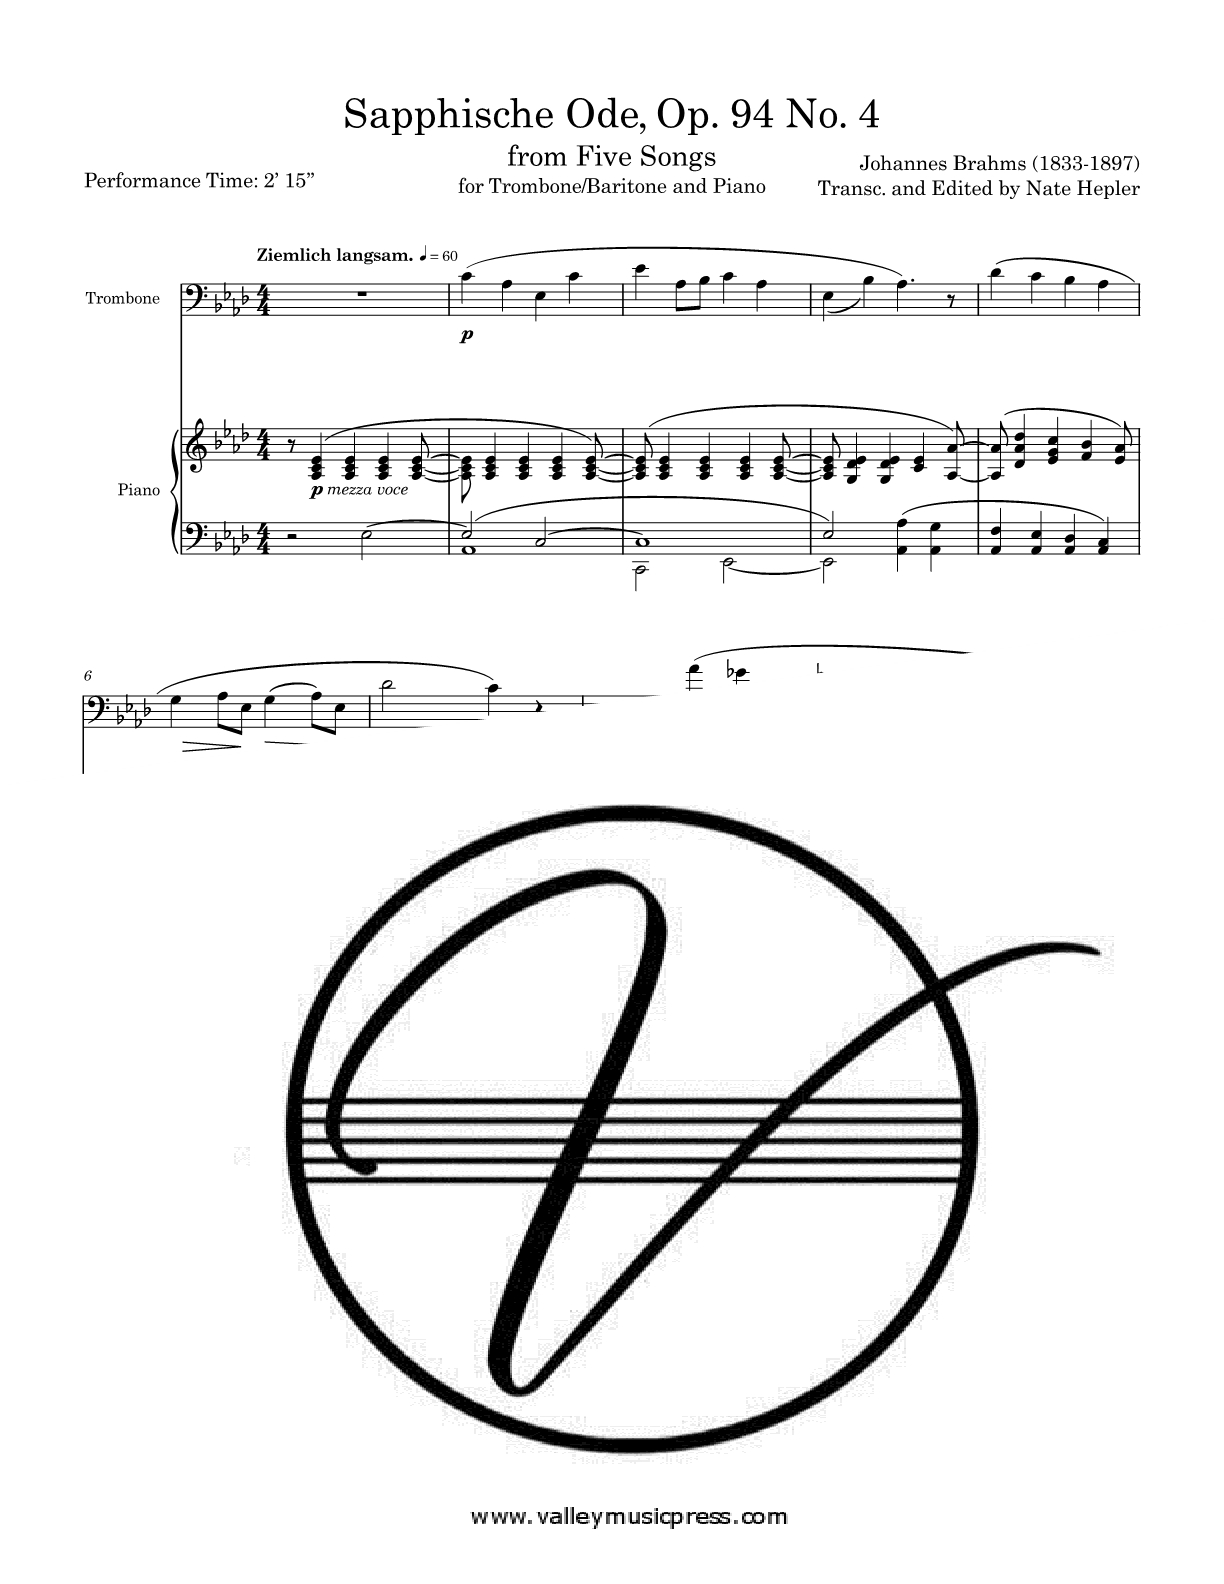 Brahms - Sapphische Ode Five Songs Op. 94 No. 4 (Trb & Piano)